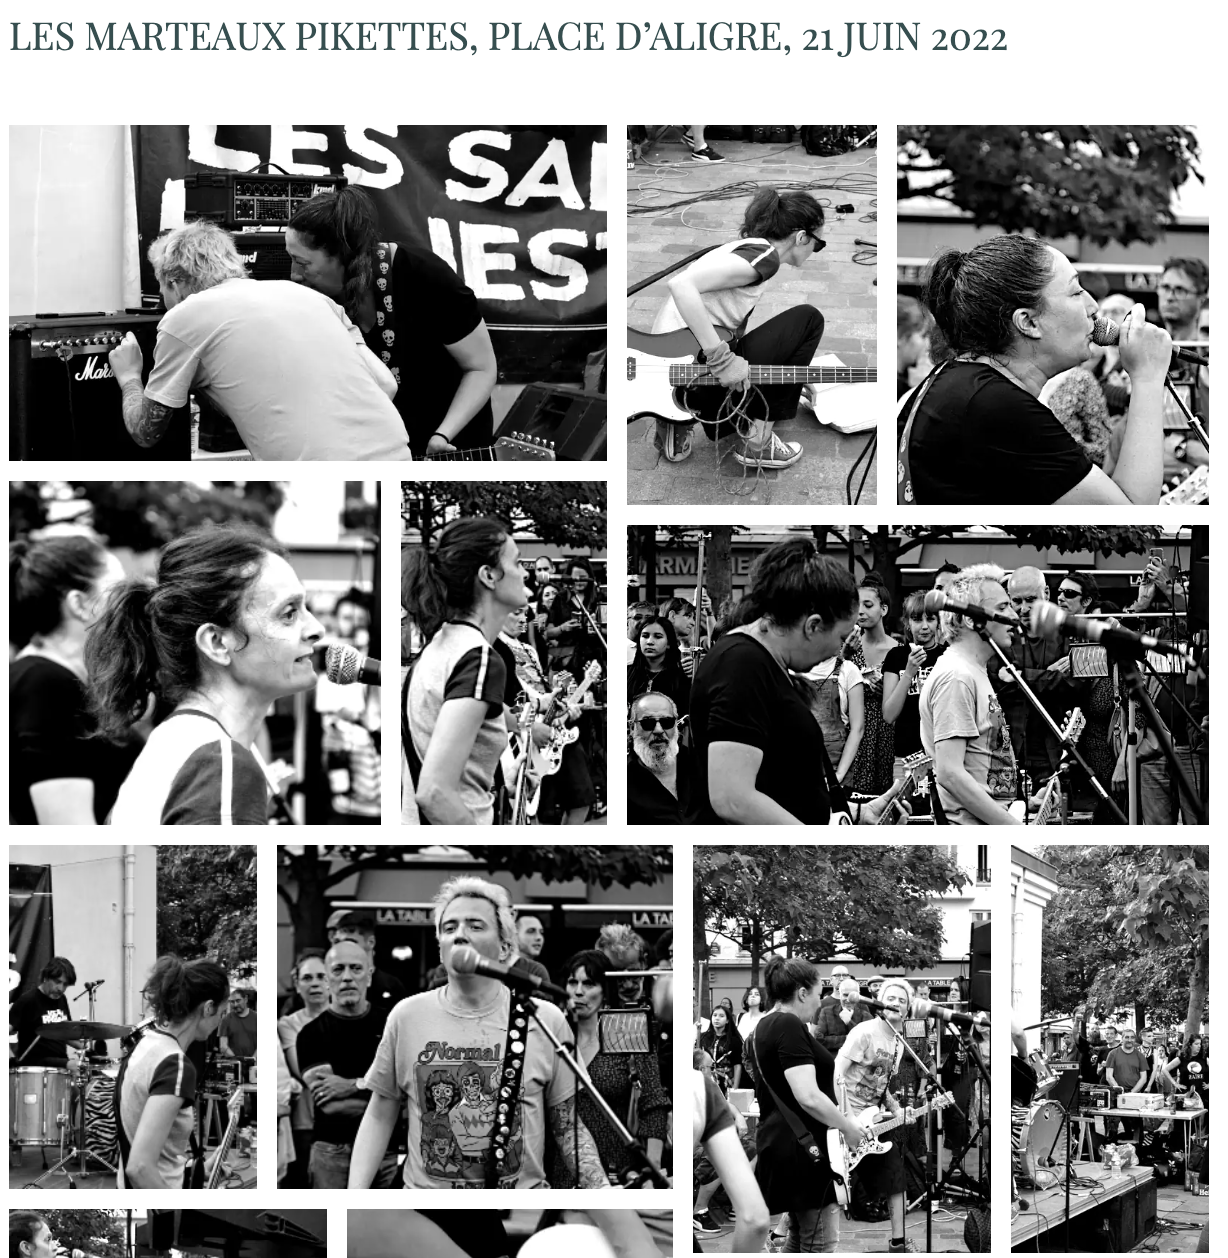 Les Marteaux Pikettes - Live 21 juin 2022